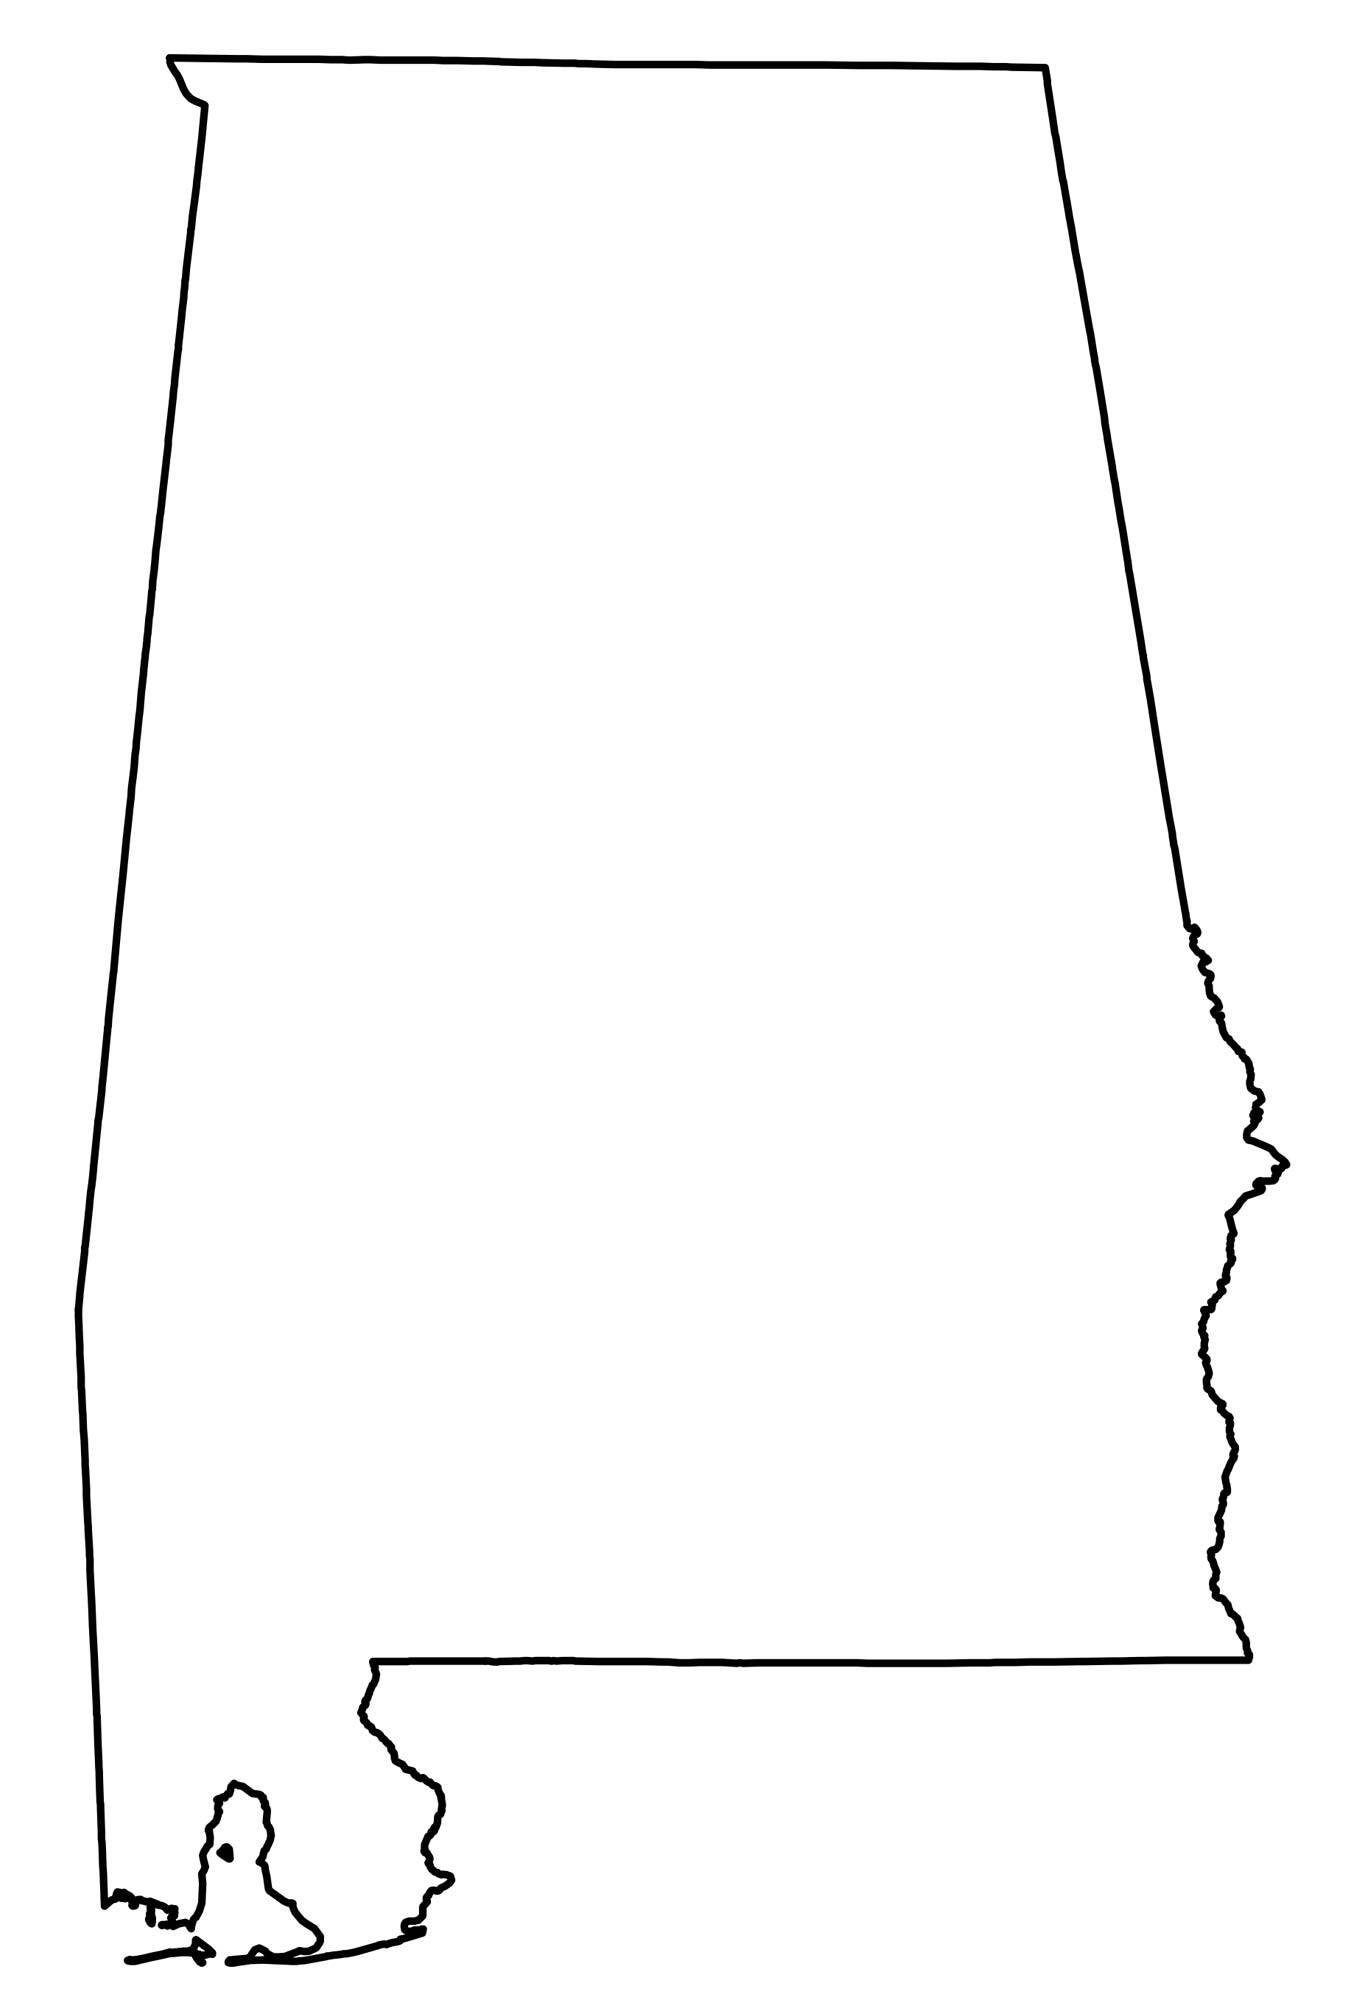 Alabama-Outline-Map.jpg